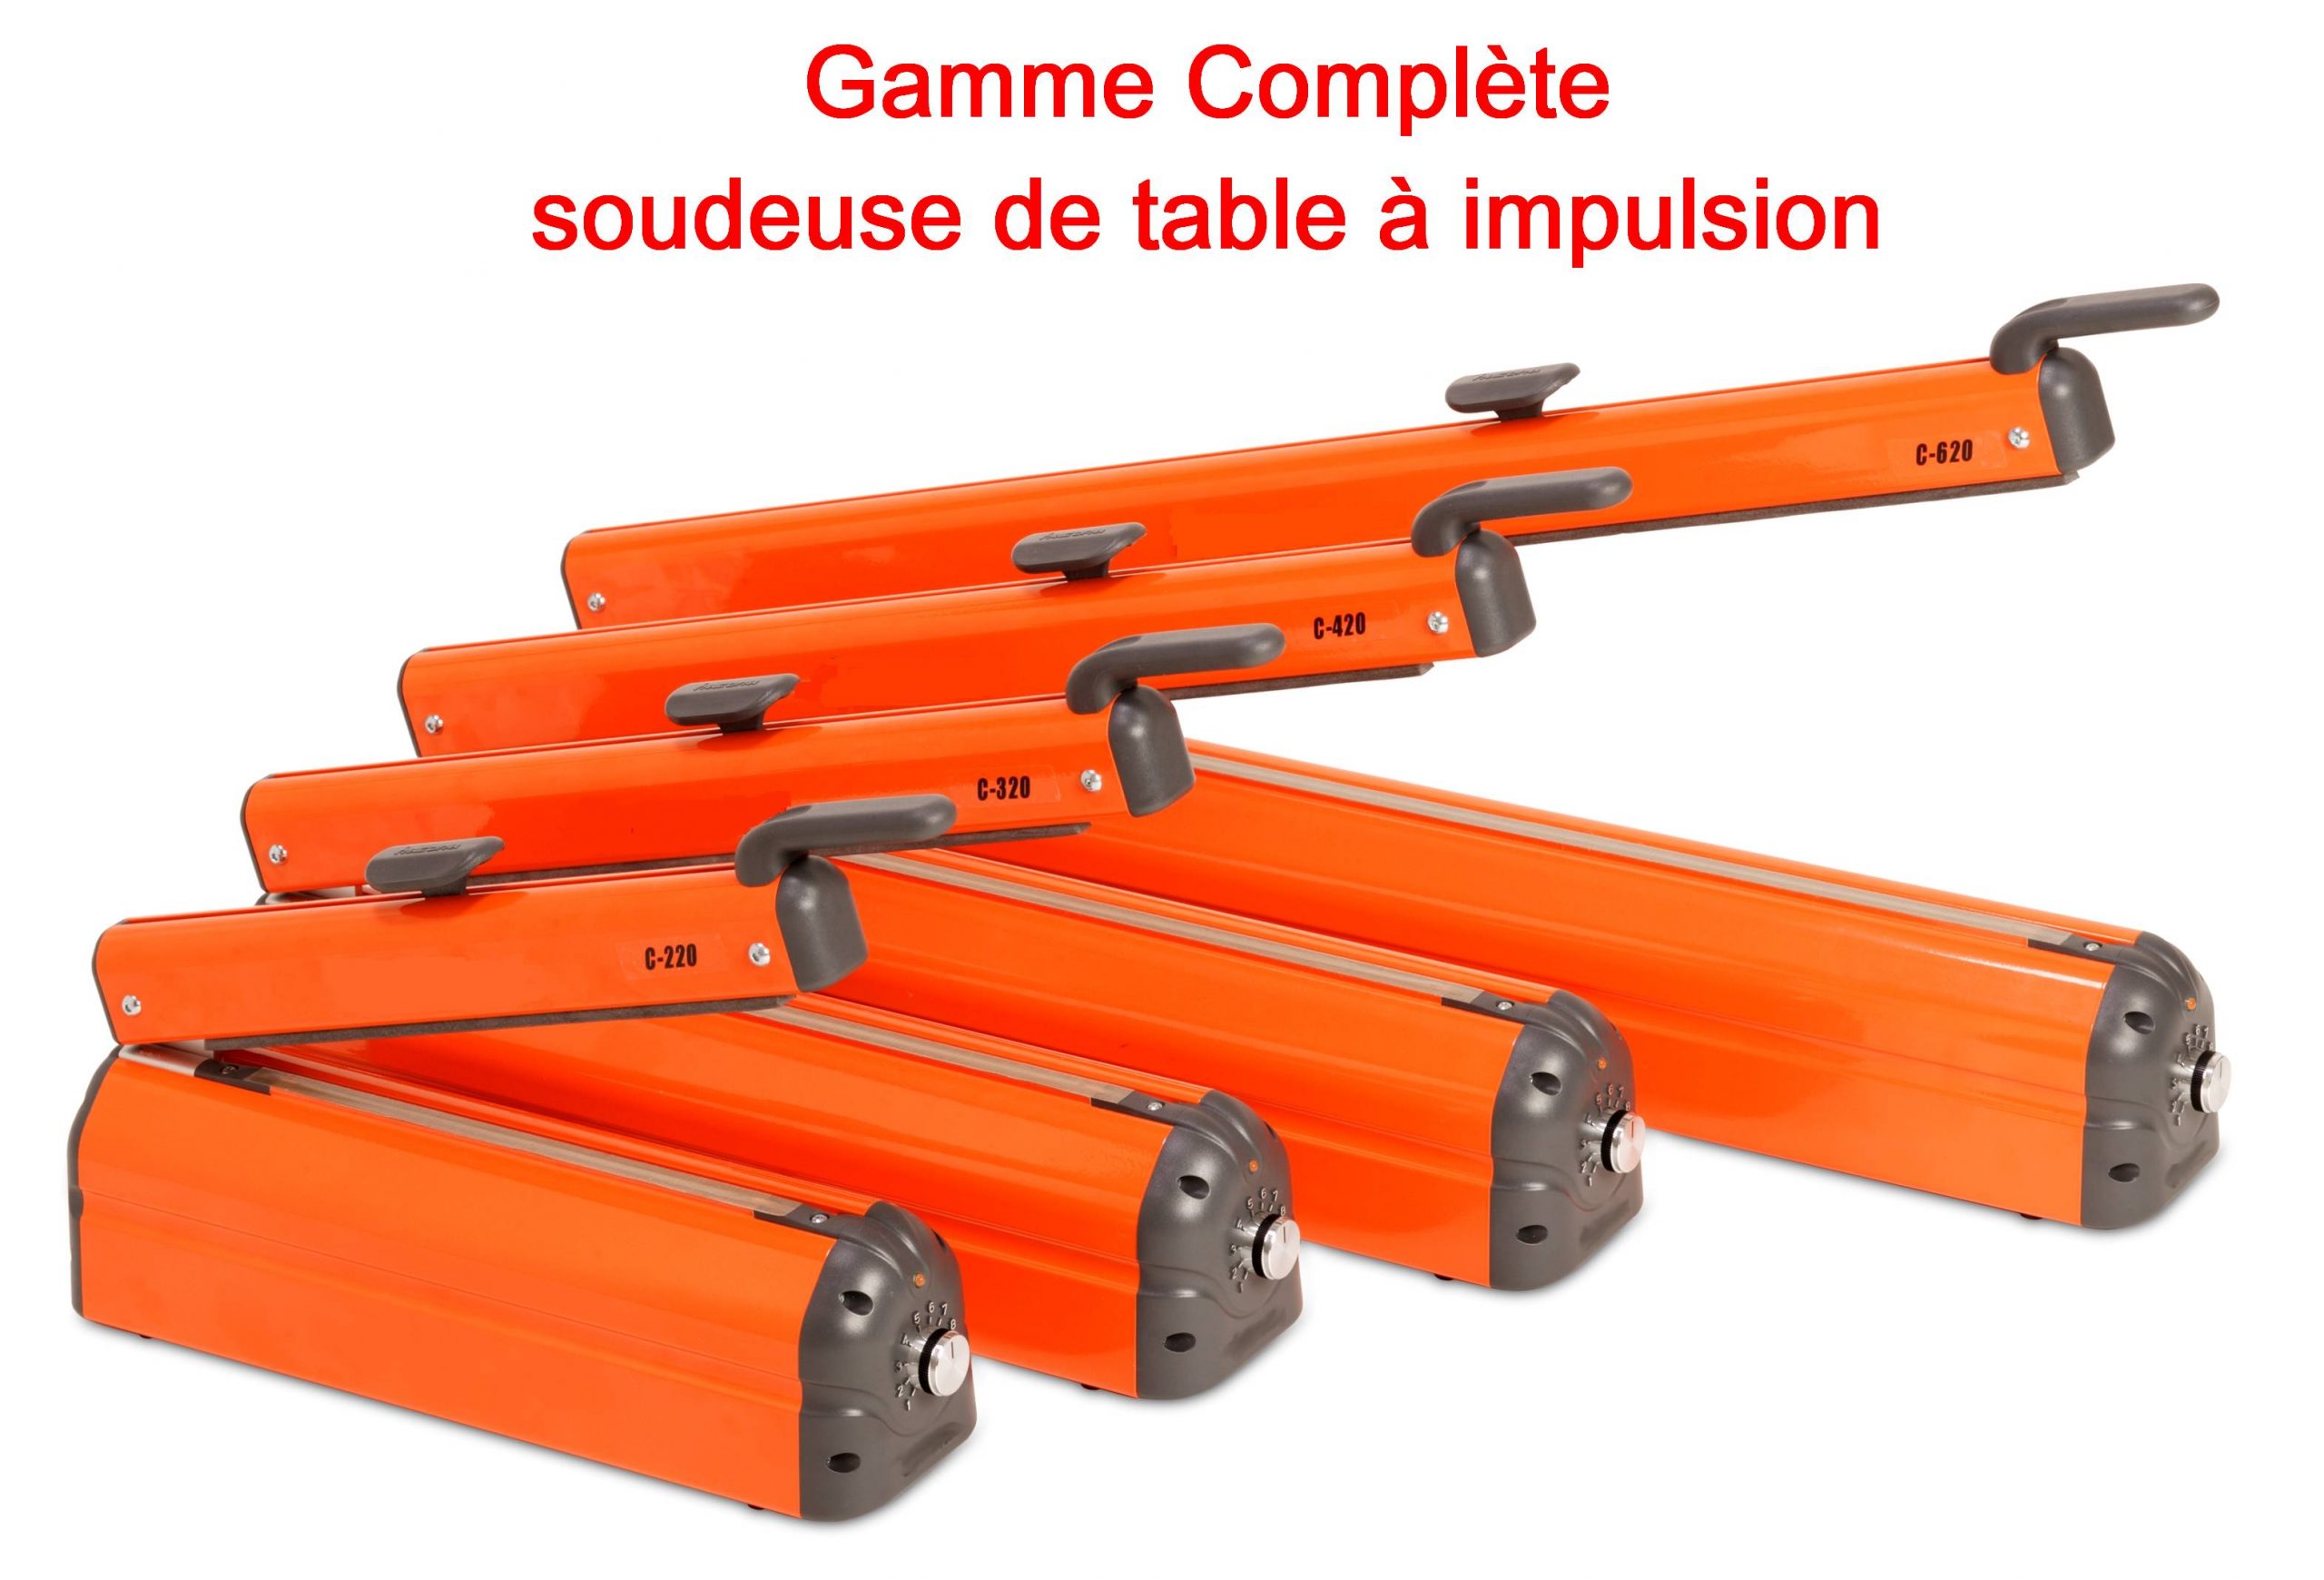 SOUDEUSE DE TABLE IMPULSION - SOUDEUSE ECONOMIQUE SAC